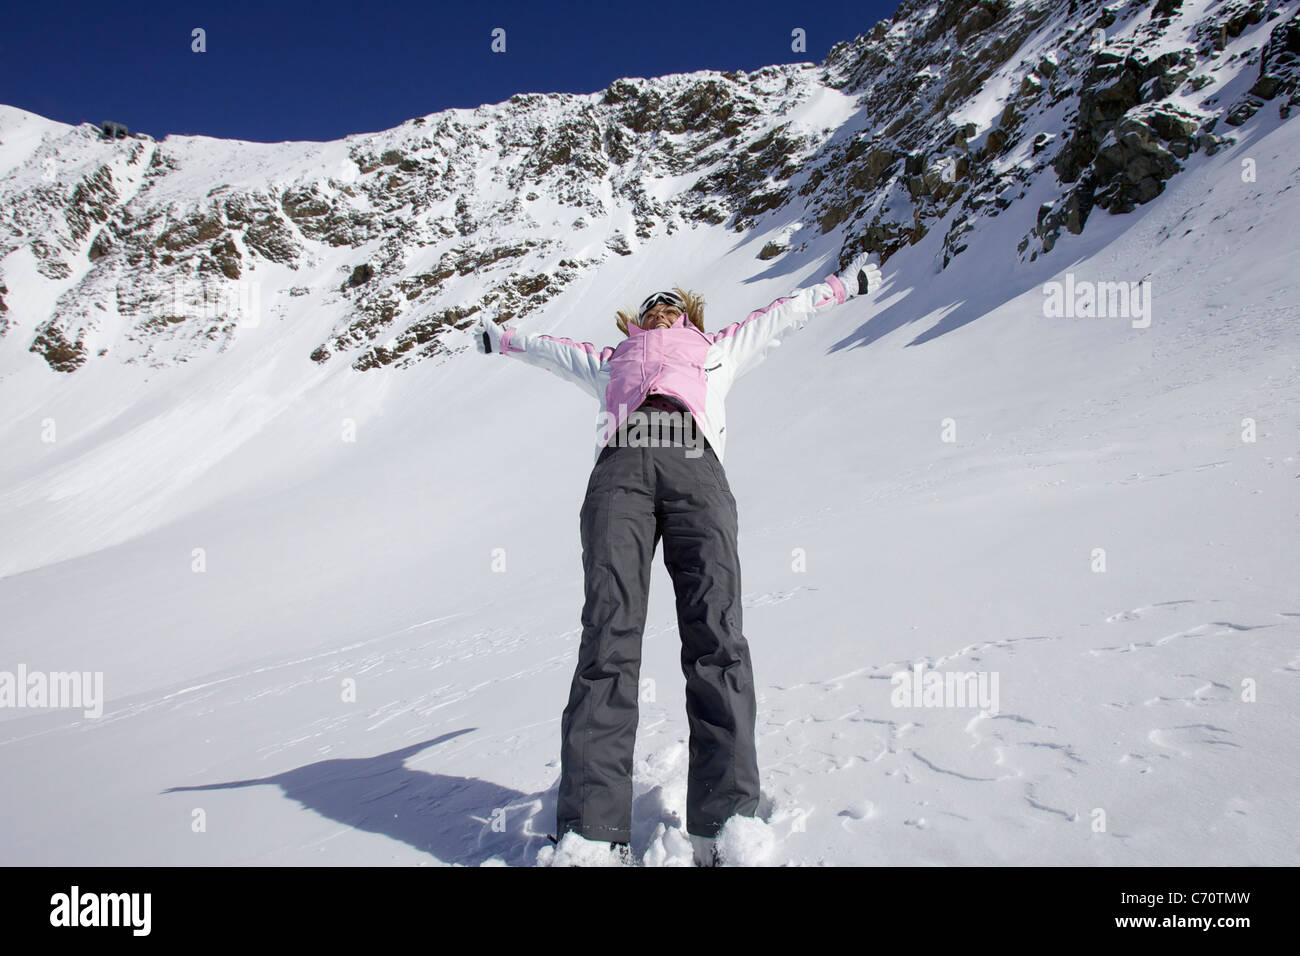 Woman skiing backwards down slope Stock Photo